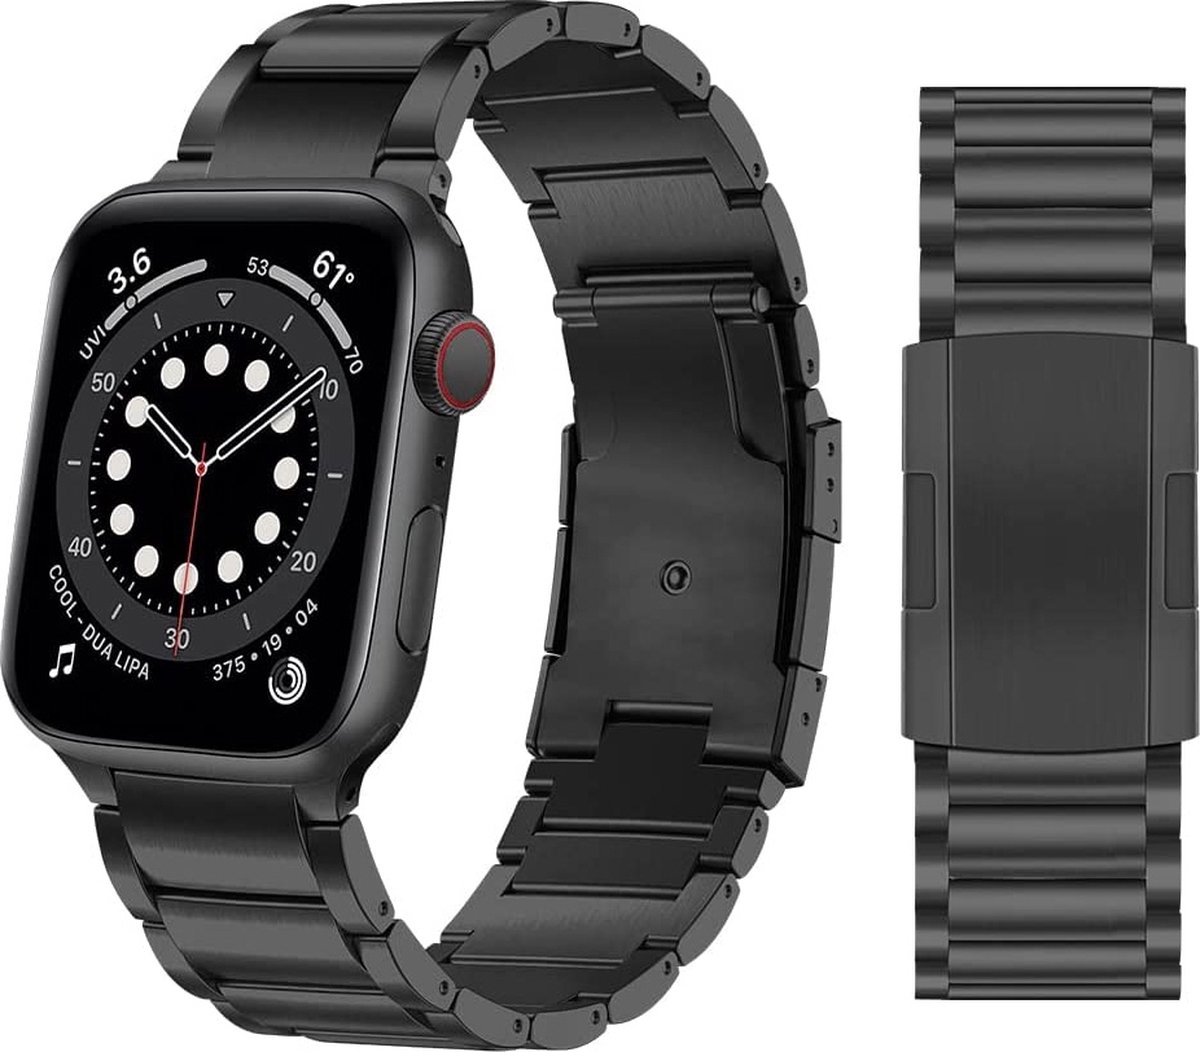 Convient pour bracelet Apple Watch - By Qubix - Bracelet à maillons en acier  - Argent